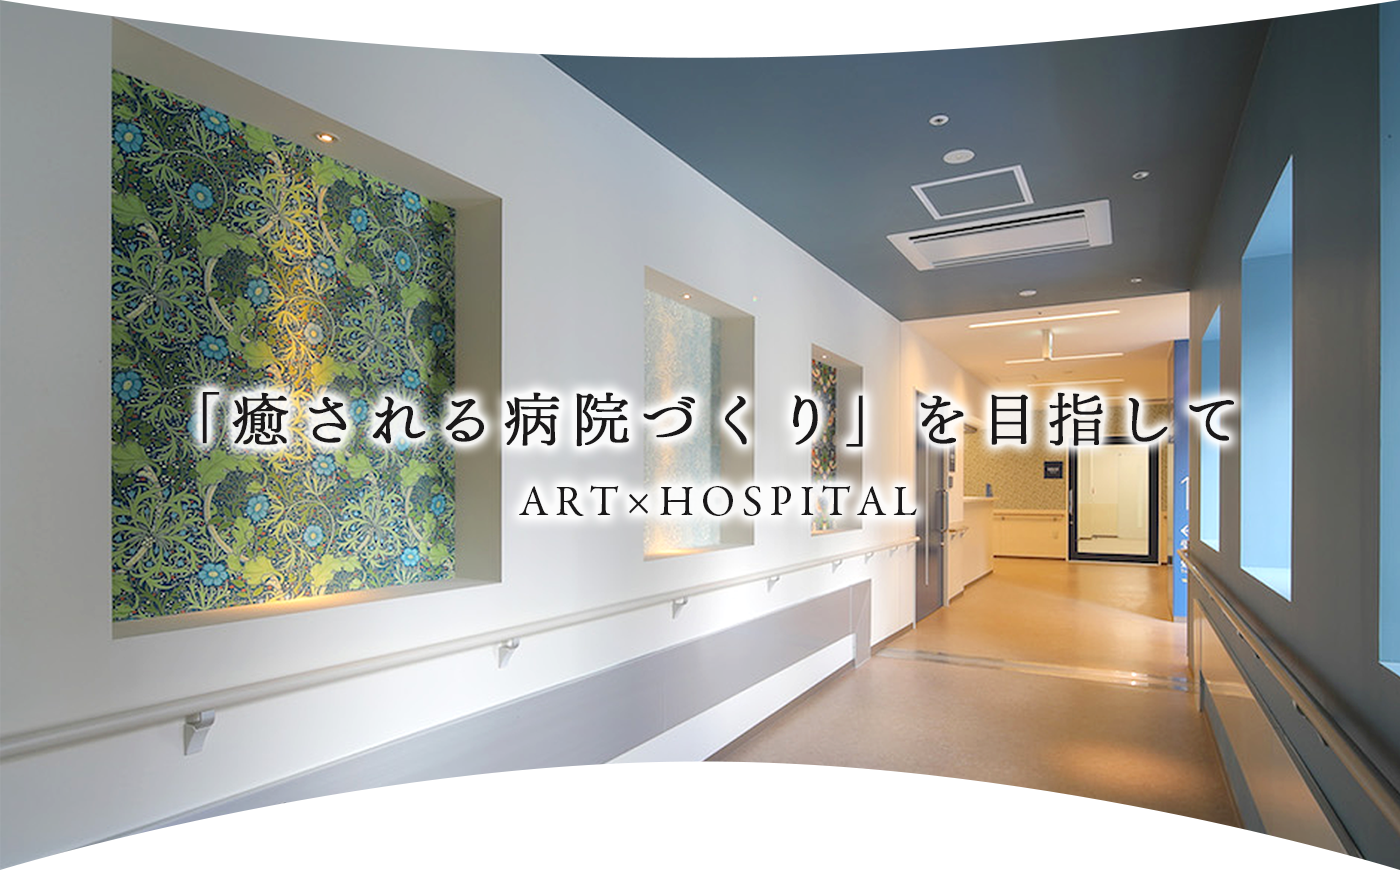 「癒される病院づくり」を目指して　ART×HOSPITAL